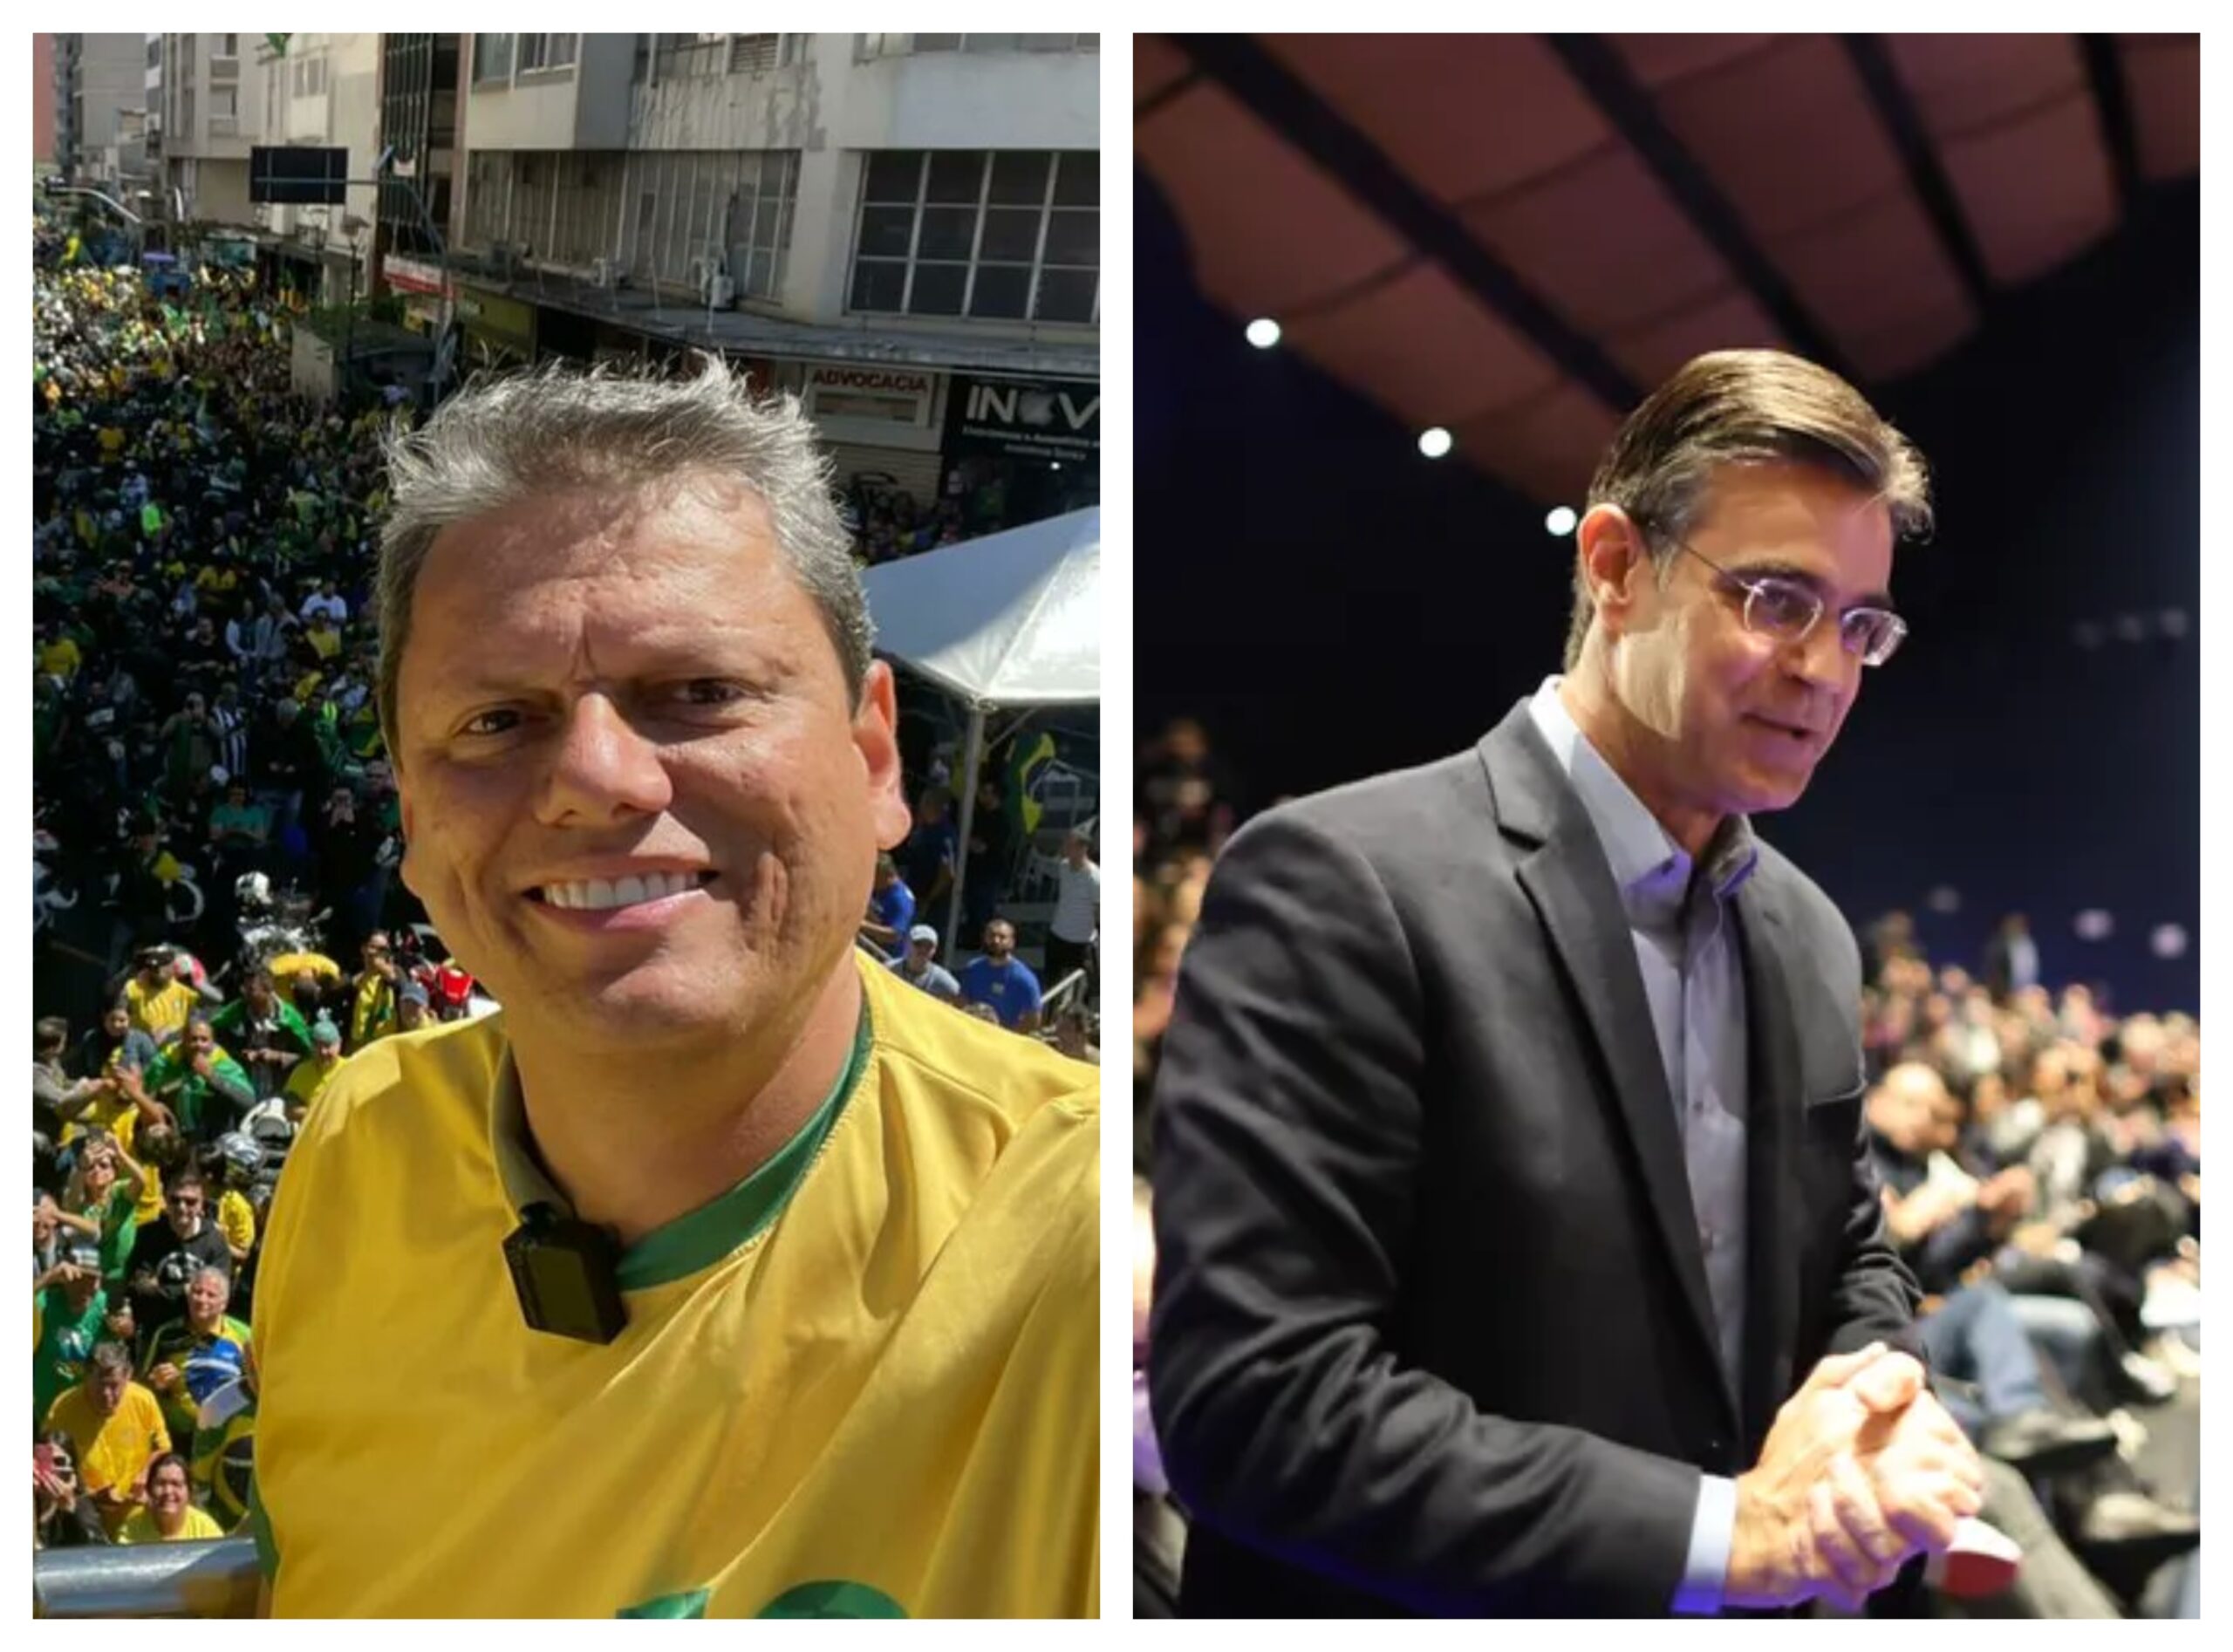 Garcia parabeniza Tarcísio de Freitas após eleição em São Paulo: "Desejo sucesso"